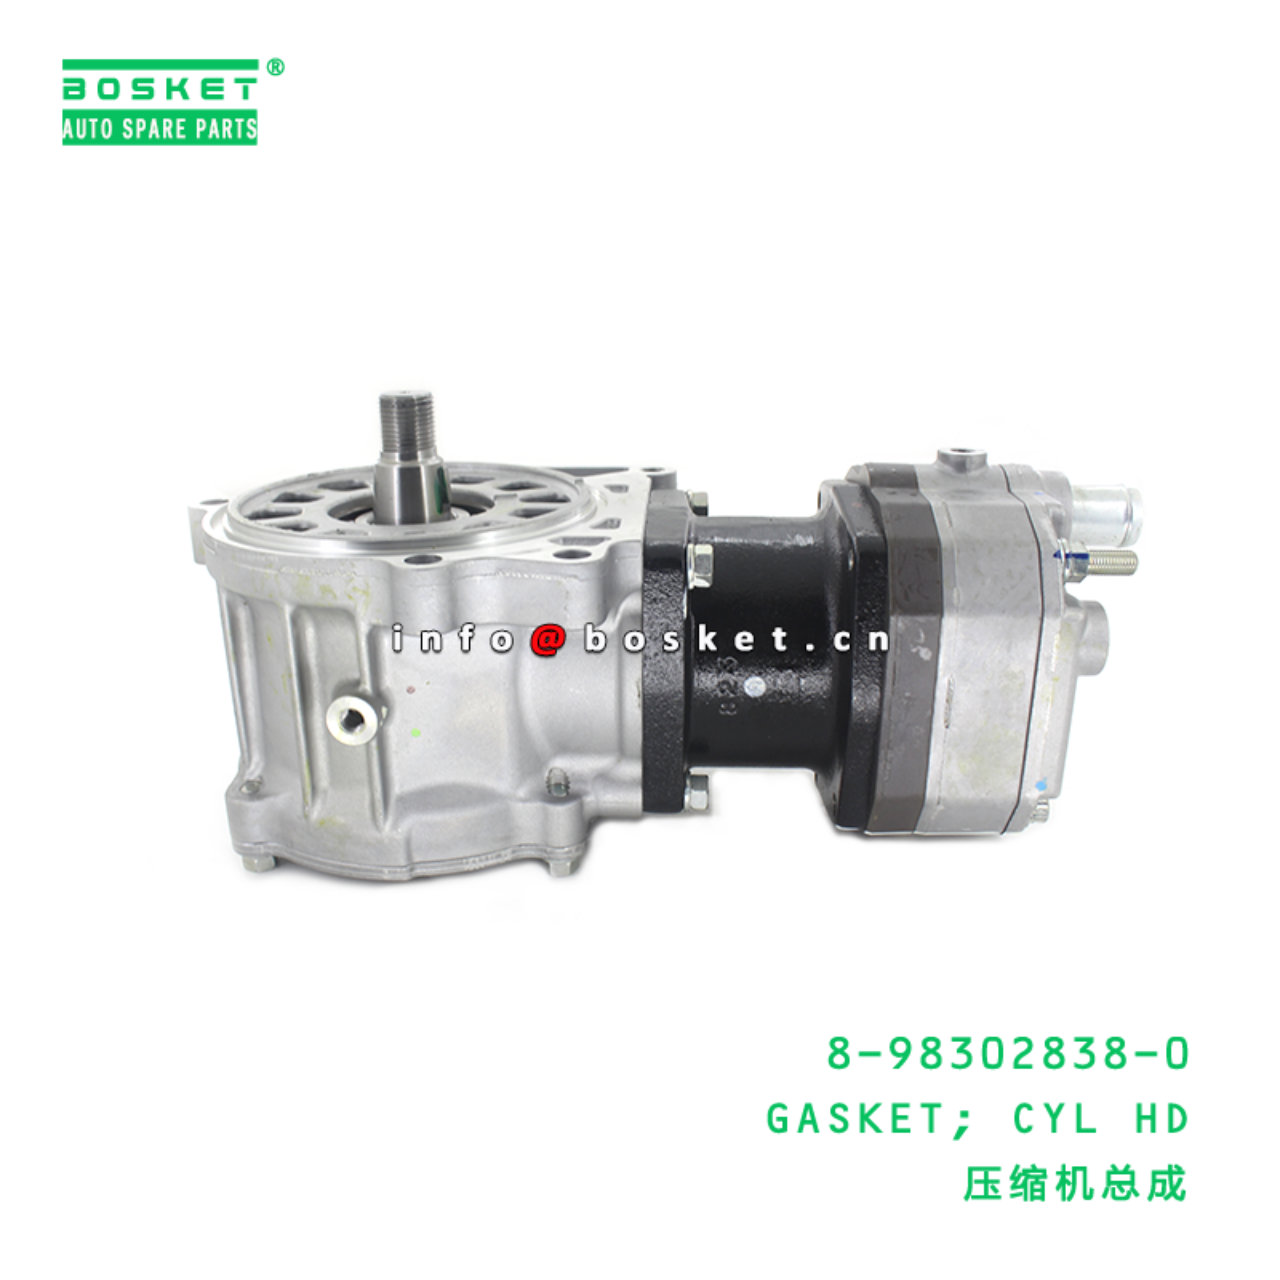 8-98302838-0 Cylinder Head Gasket 8983028380 Suitable for ISUZU 